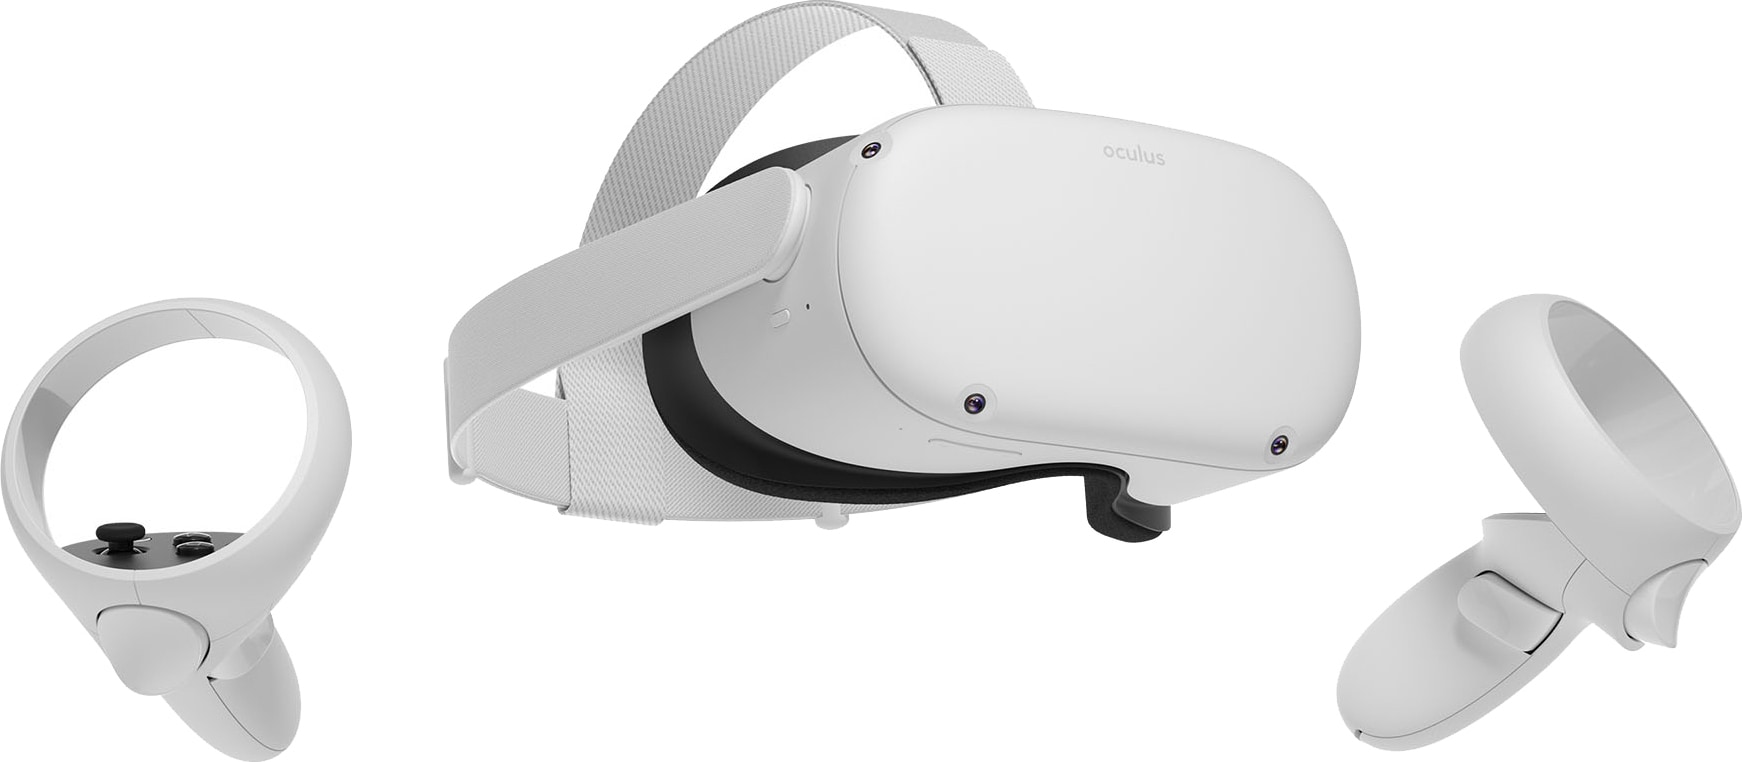 Oculus Quest trådløse VR-briller (64 GB) - Elkjøp